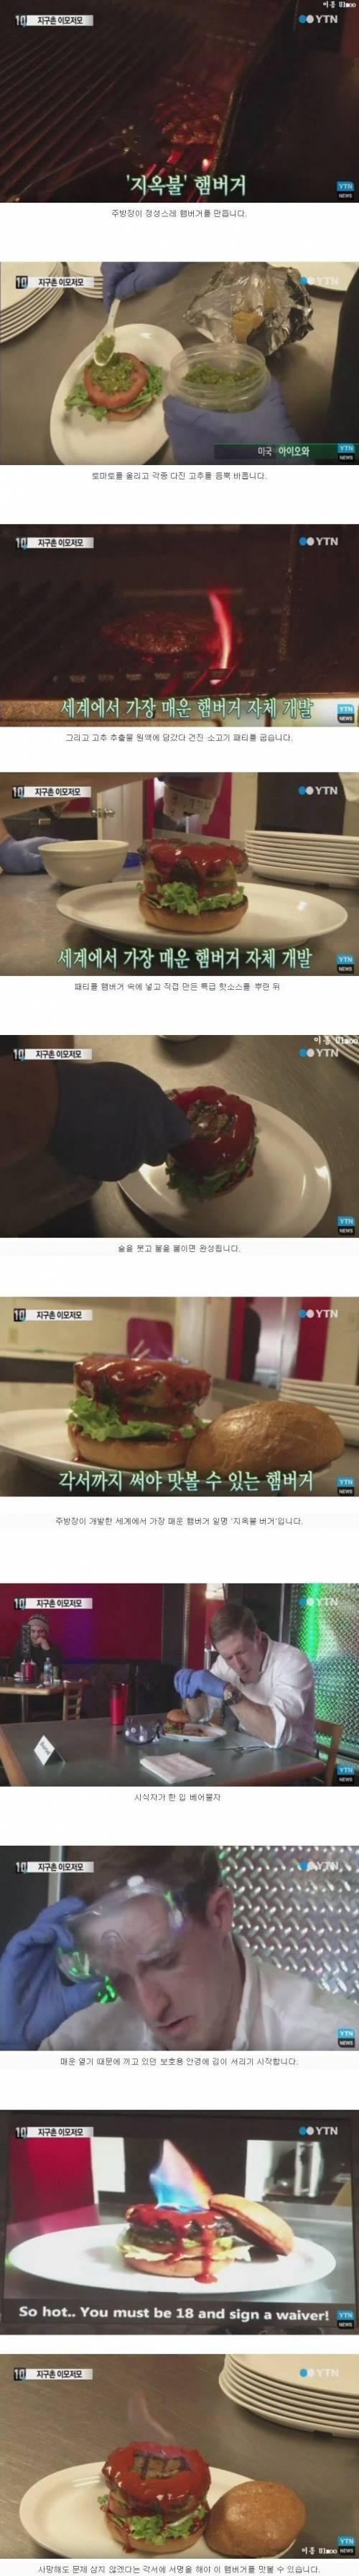 각서 서명해야 먹을 수 있는 햄버거.jpg